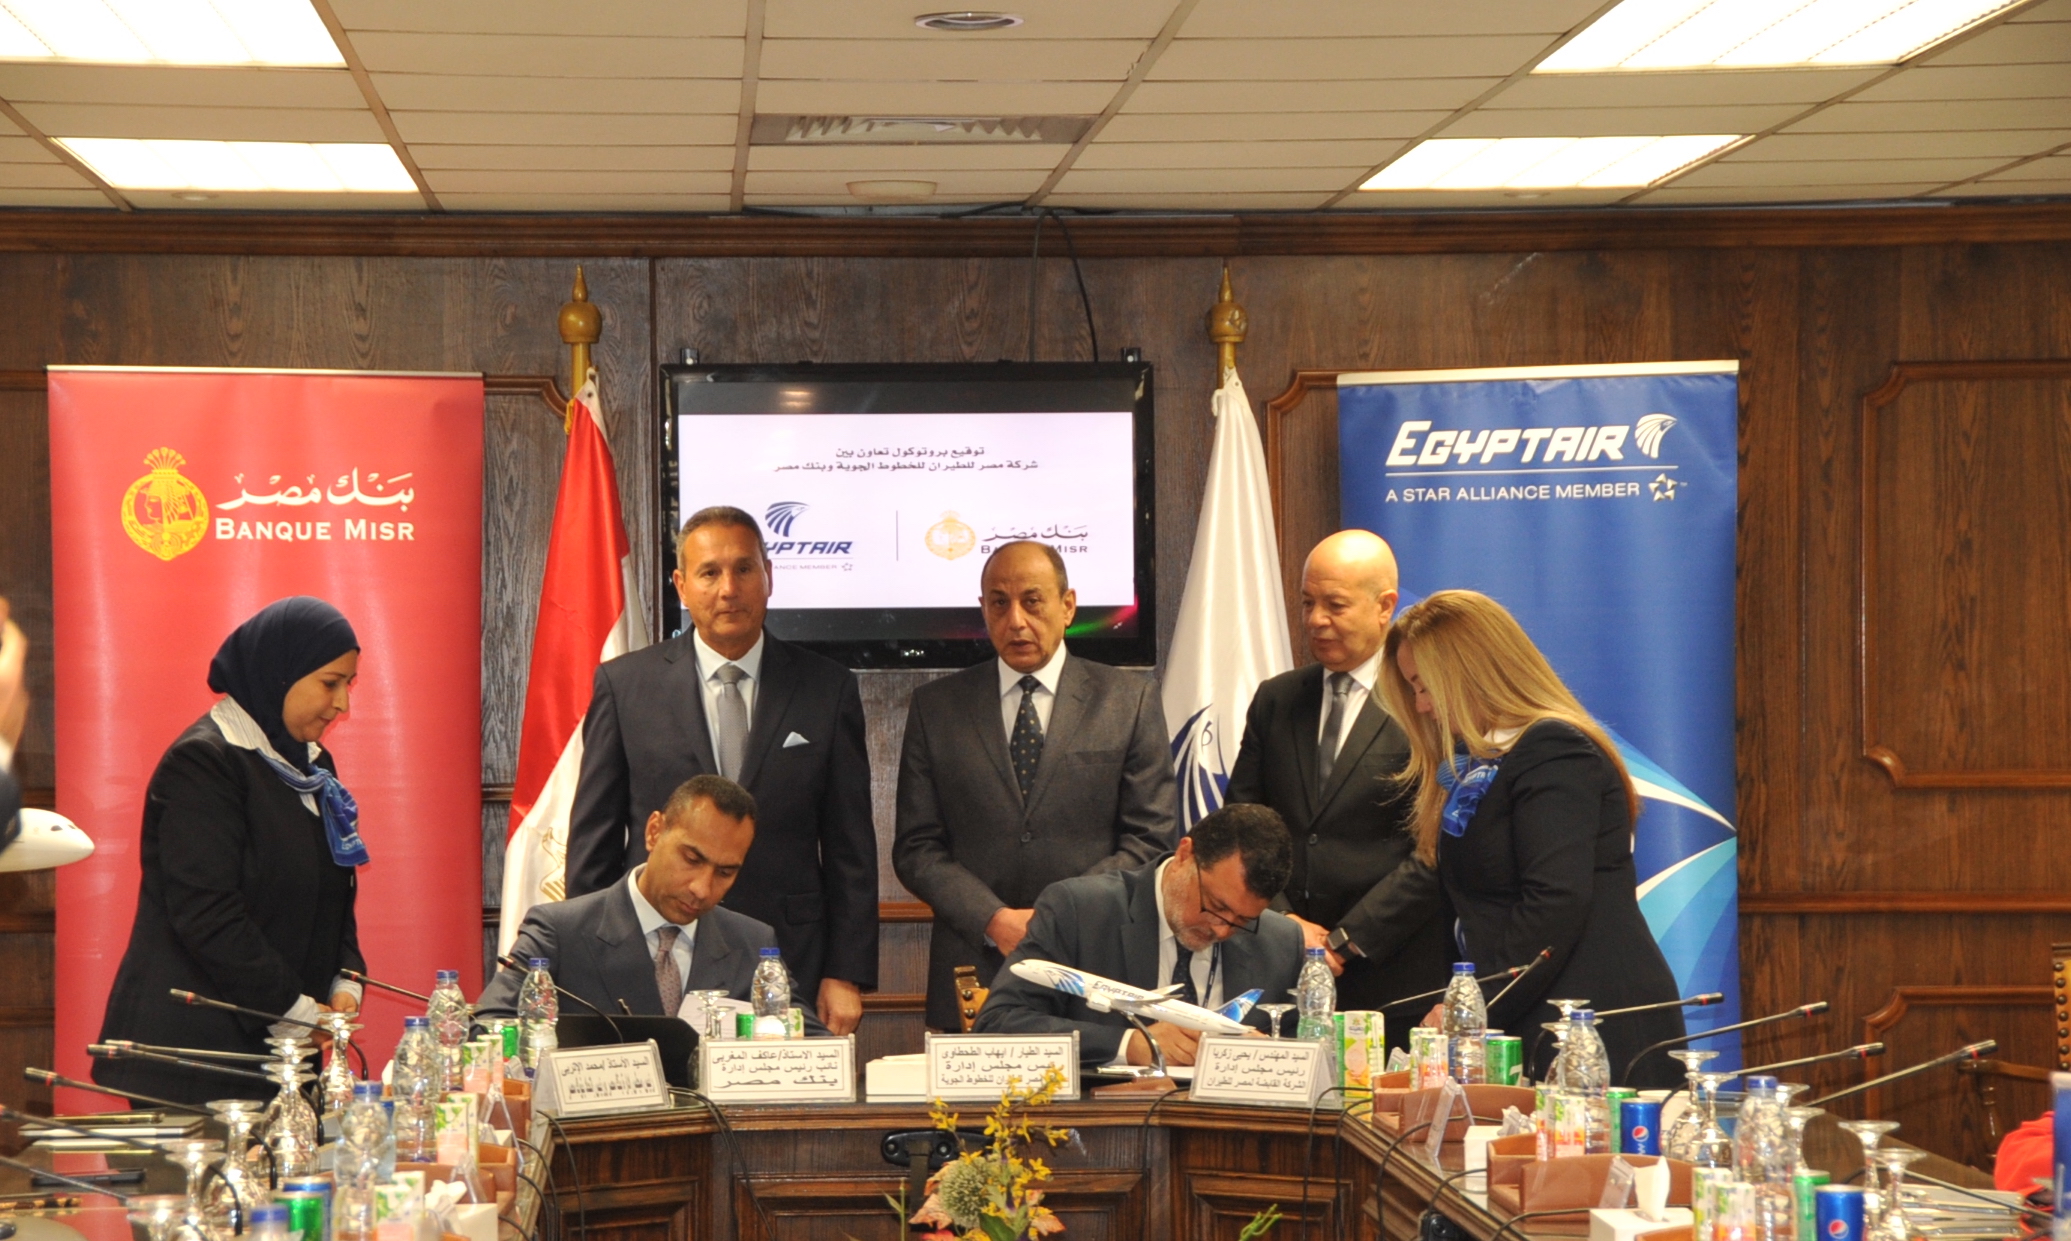 وزير الطيران المدني يشهد توقيع بروتوكول تعاون بين مصر للطيران وبنك مصر في مجال التحصيل الإلكتروني